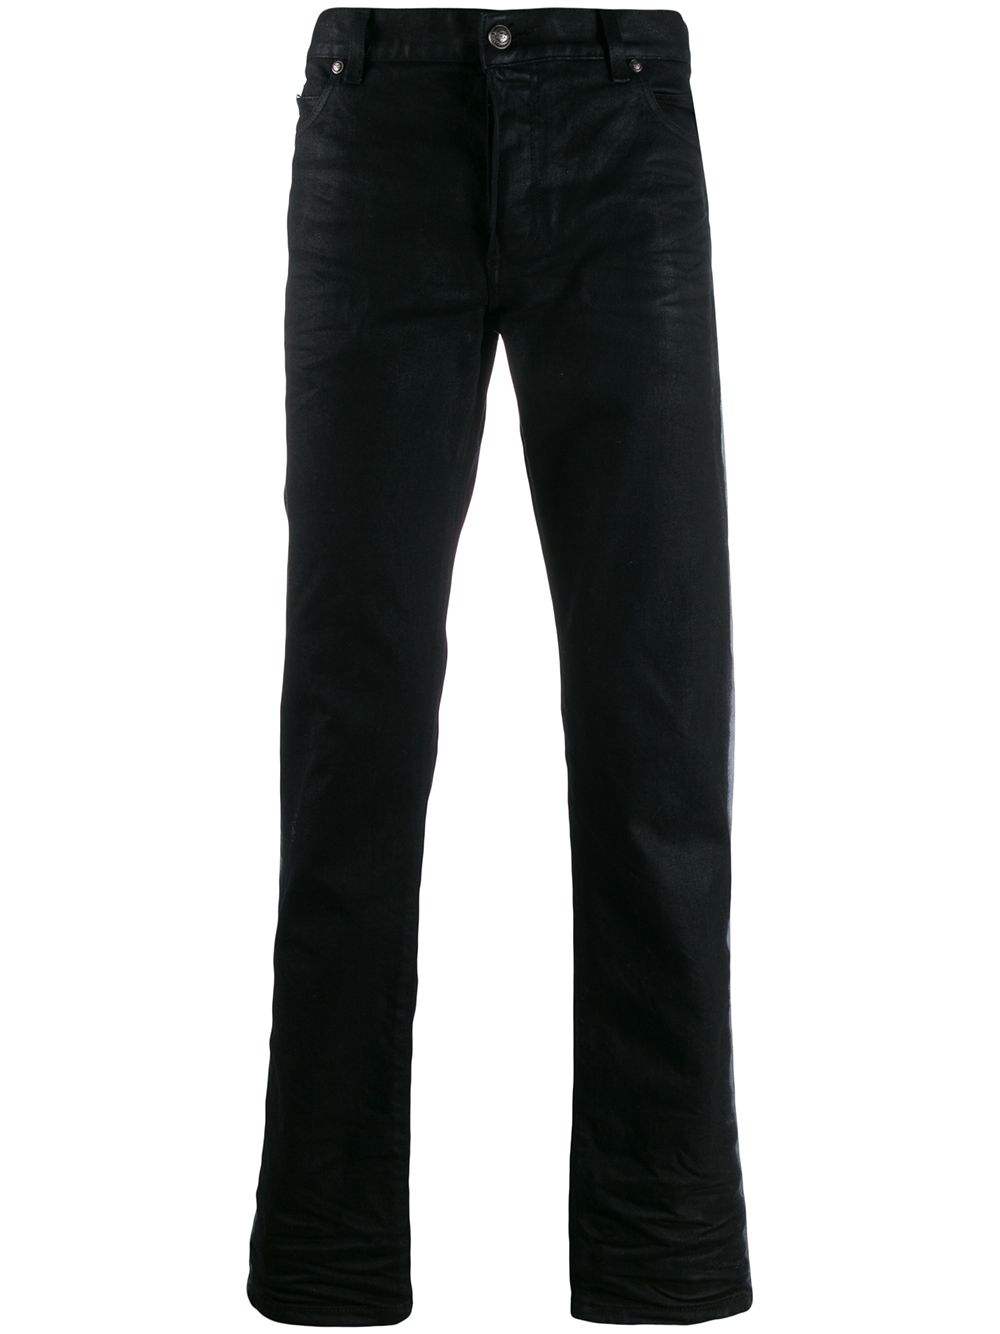 фото Balmain джинсы с полосками по бокам